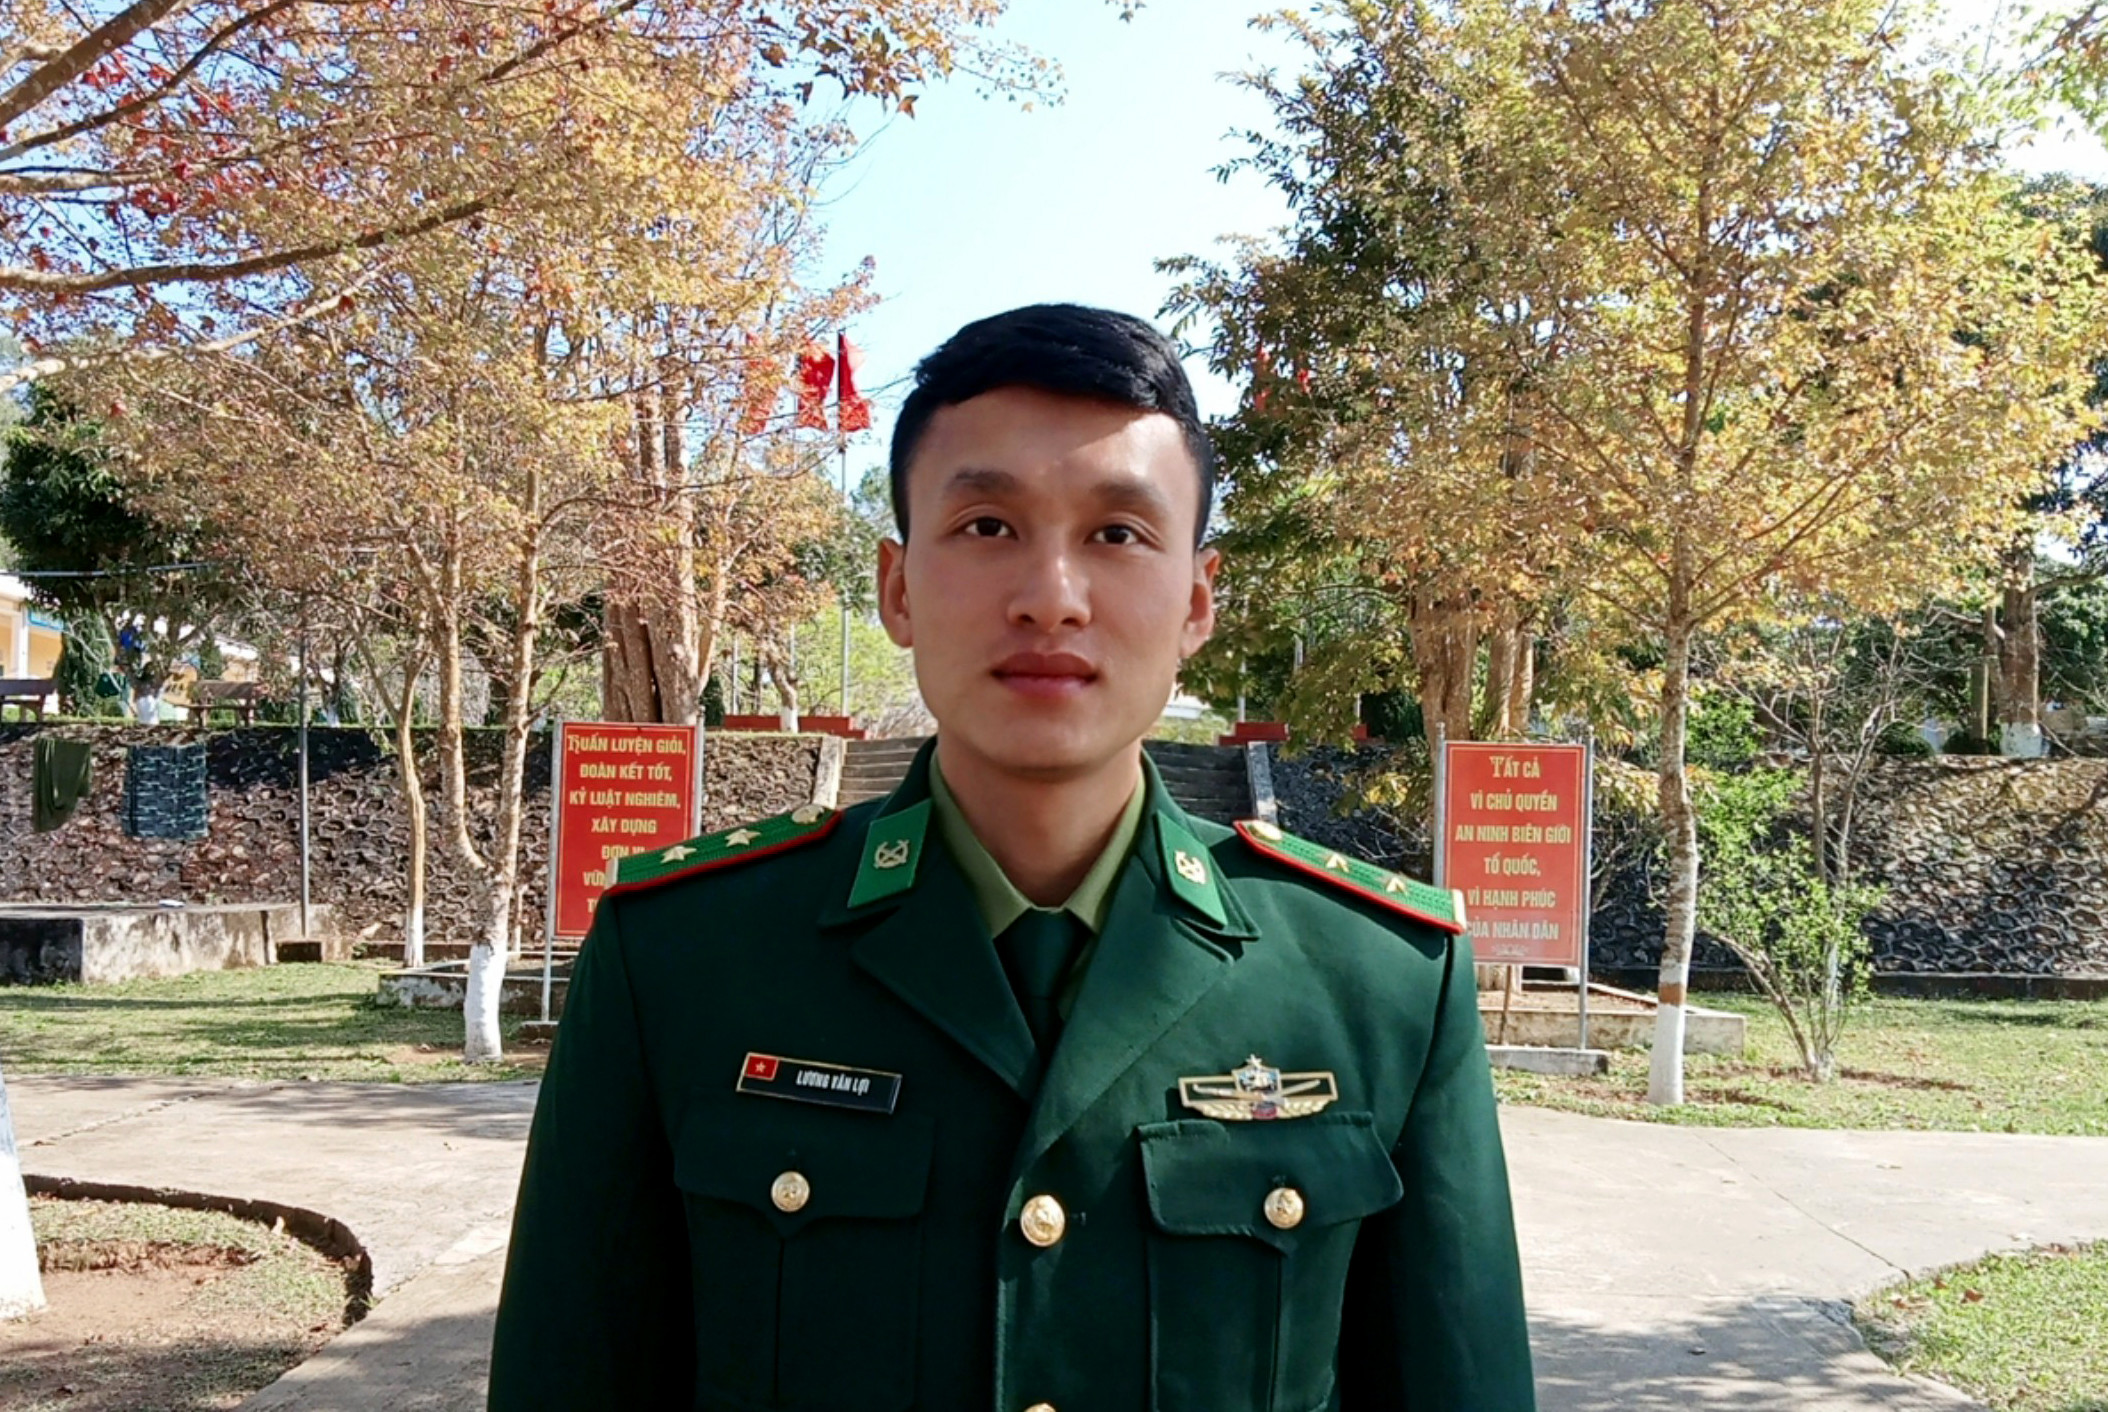 Thượng úy Lương Văn Lợi tốt nghiệp Học viện Biên phòng và hiện đang công tác tại Đồn biên phòng Keng đu (Kỳ Sơn), Ảnh: NVCC